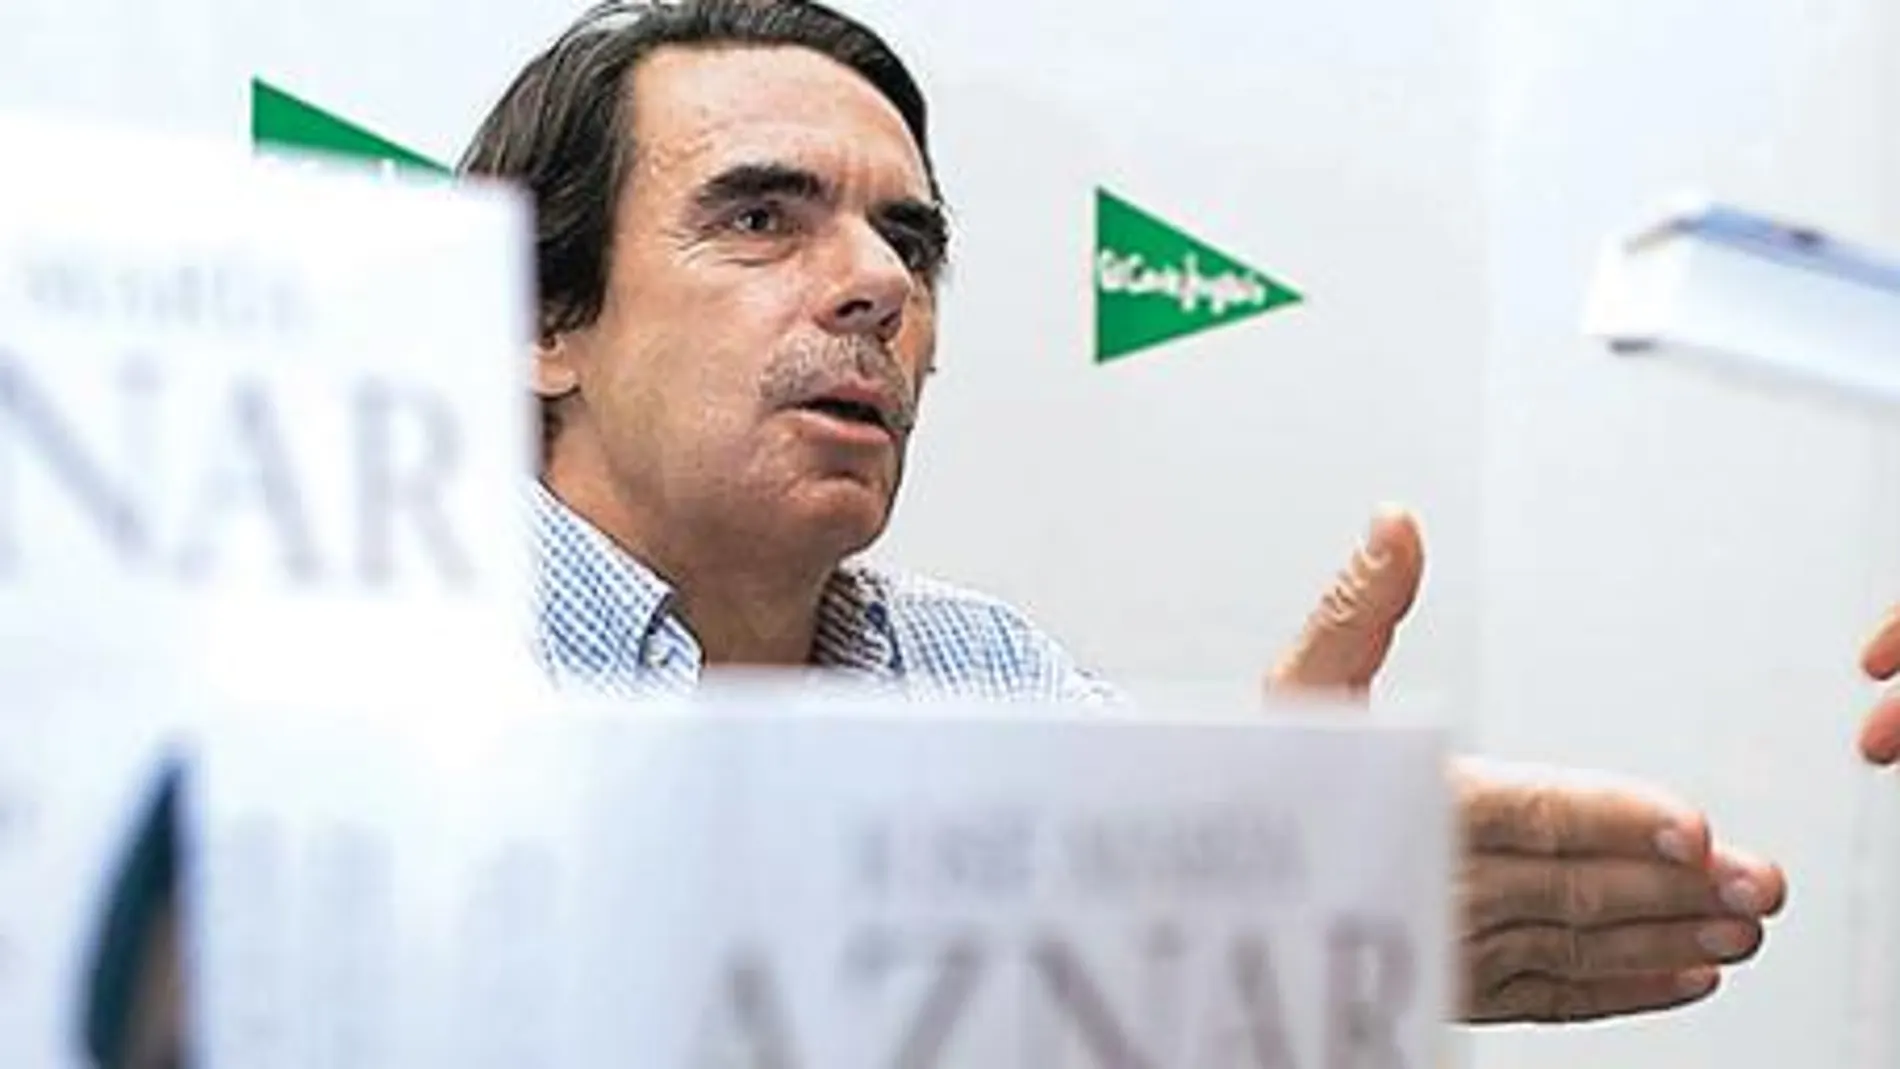 Aznar quiere liderar el debate sobre la crisis y el futuro de Europa